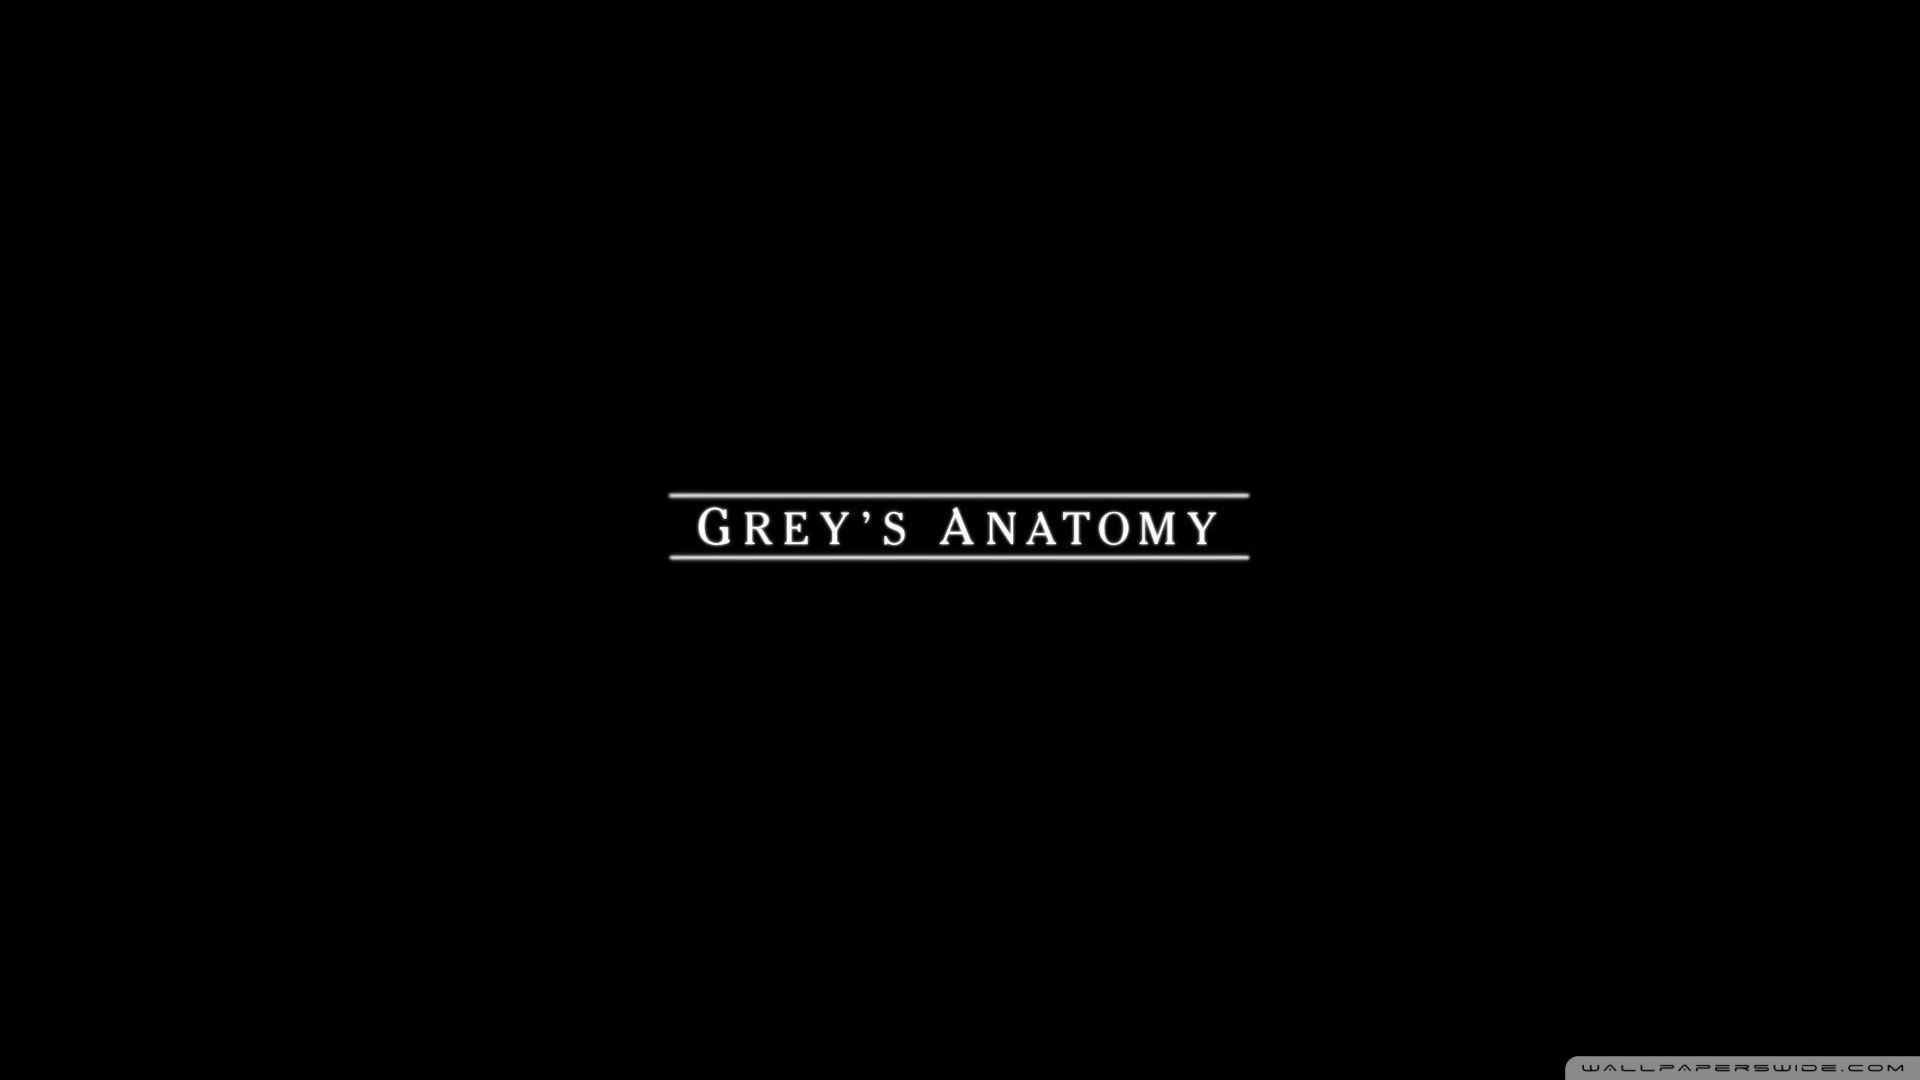 Grey's Anatomy logo on a black background - Grey's Anatomy